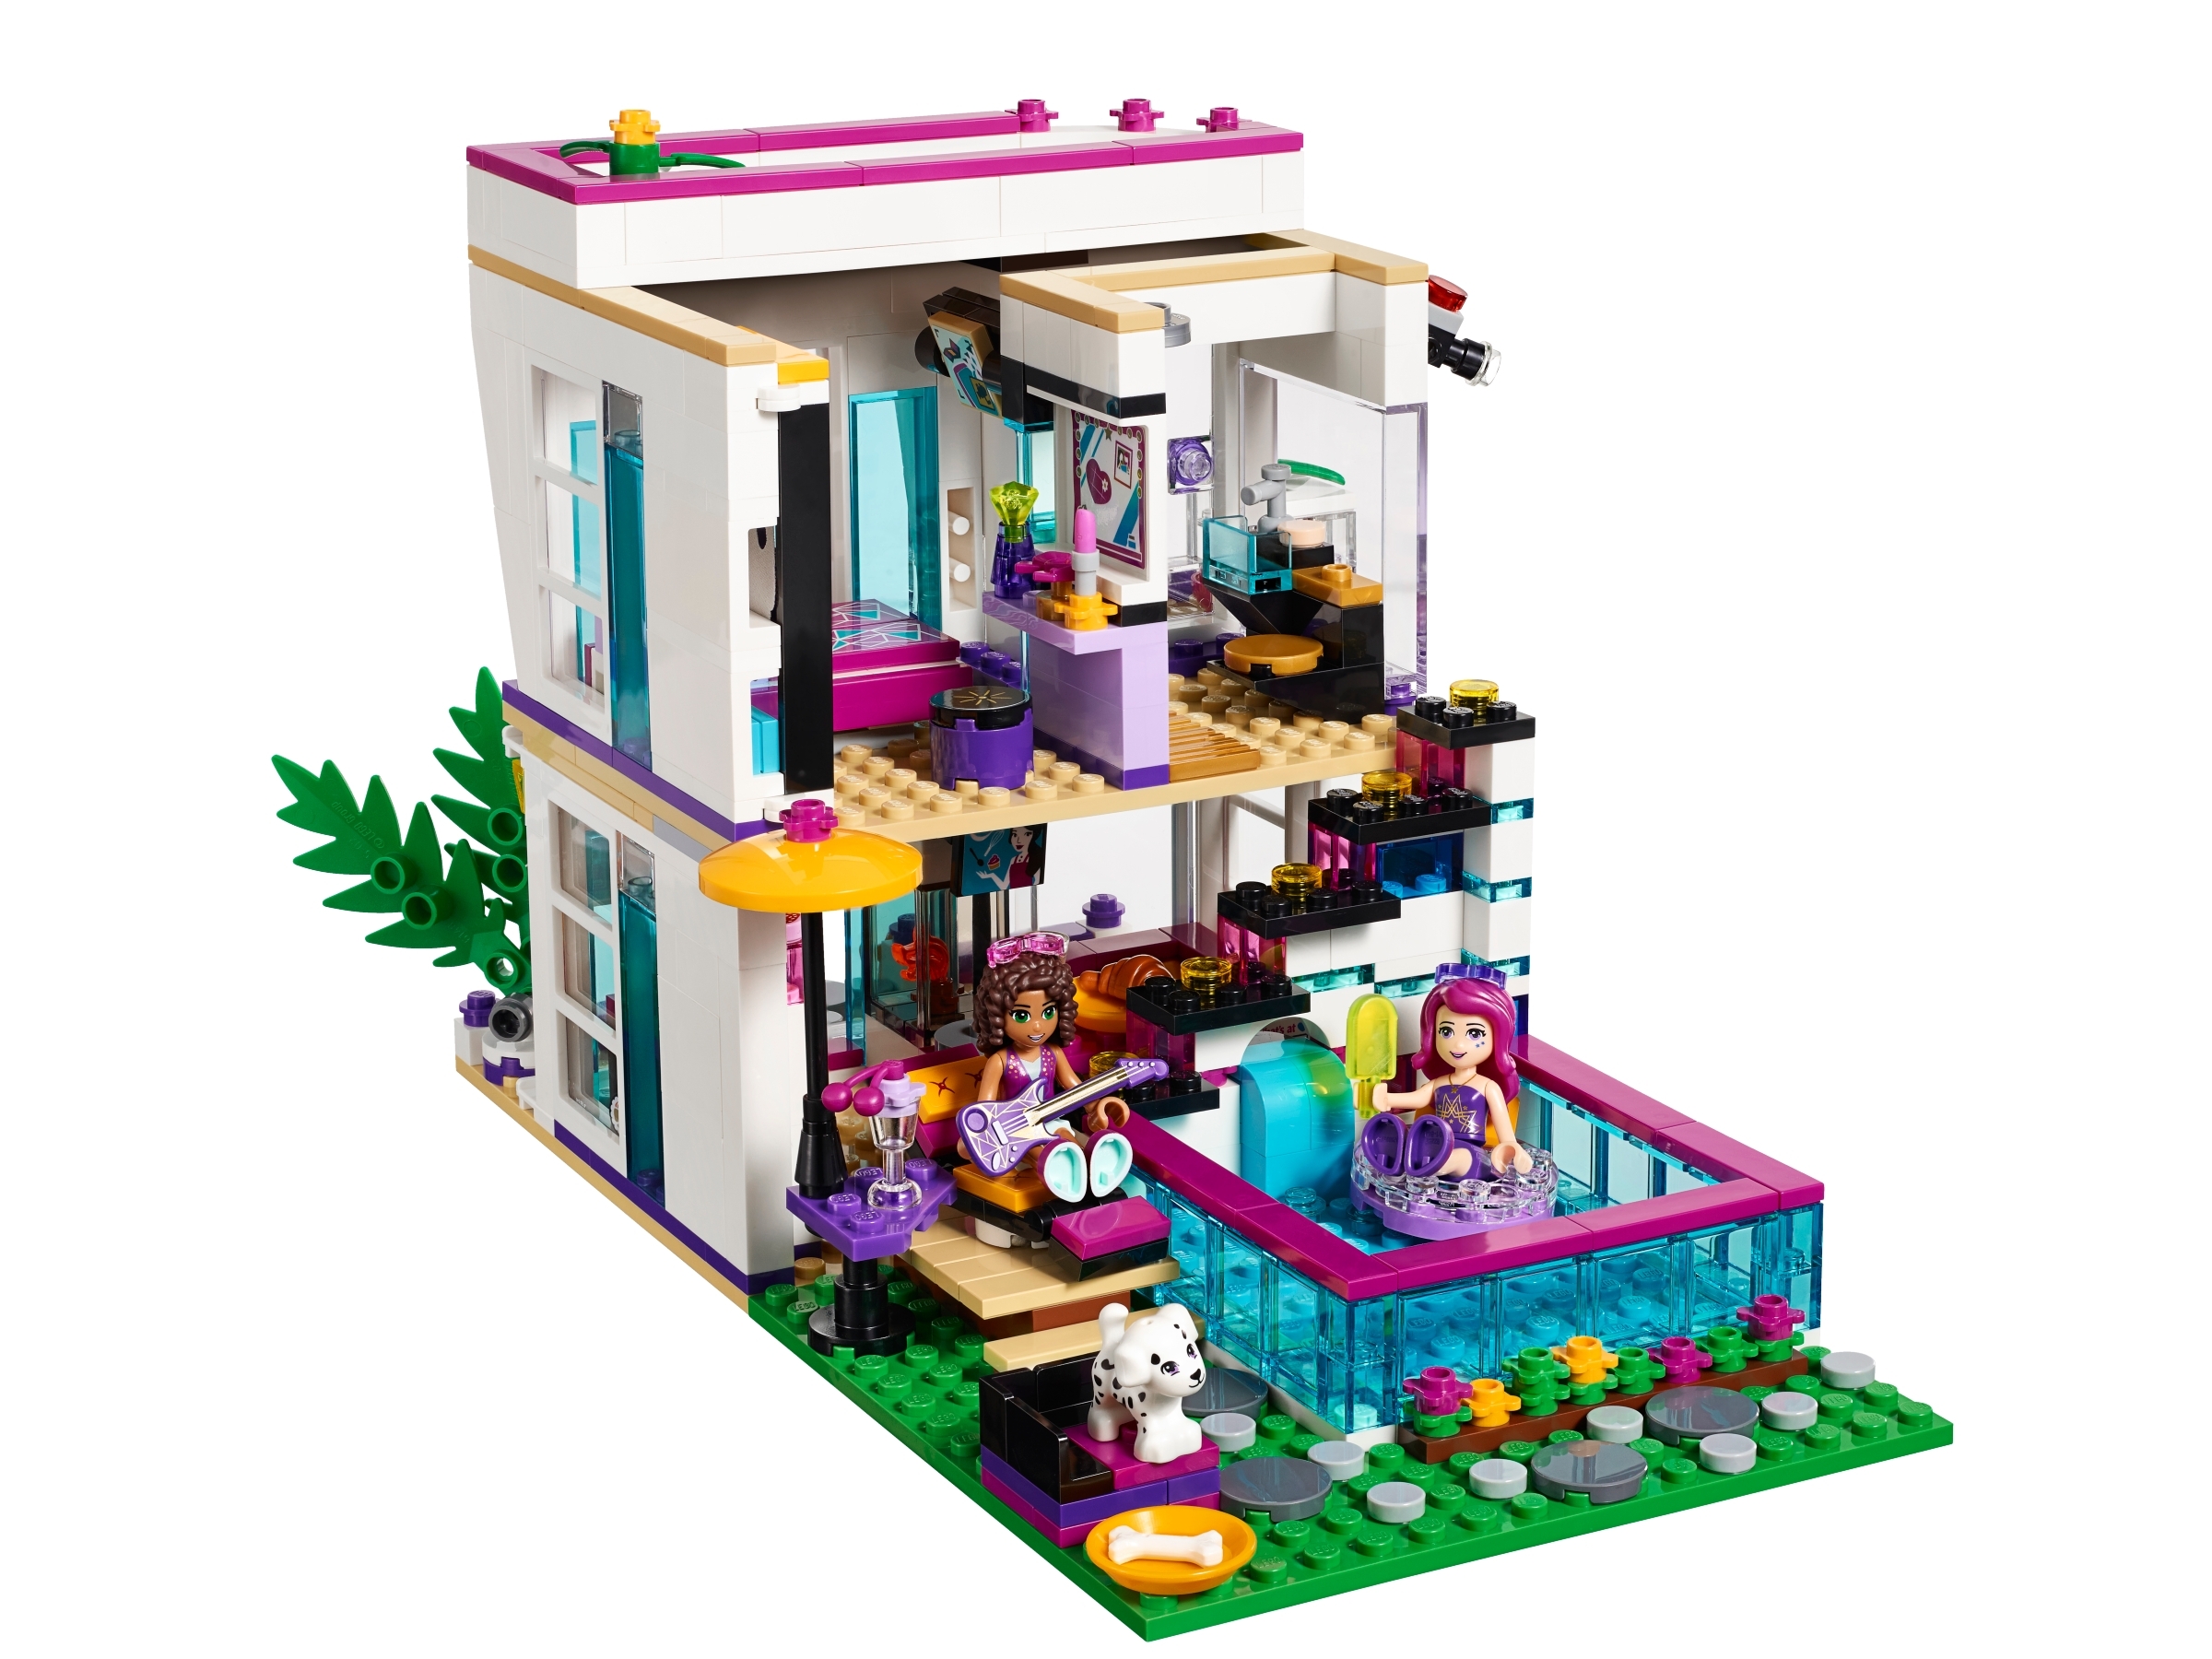 Details about  / Lego Friends Pop Star Lot Livi House Tour Bus 41106 41135 41104 41103 Incomplete